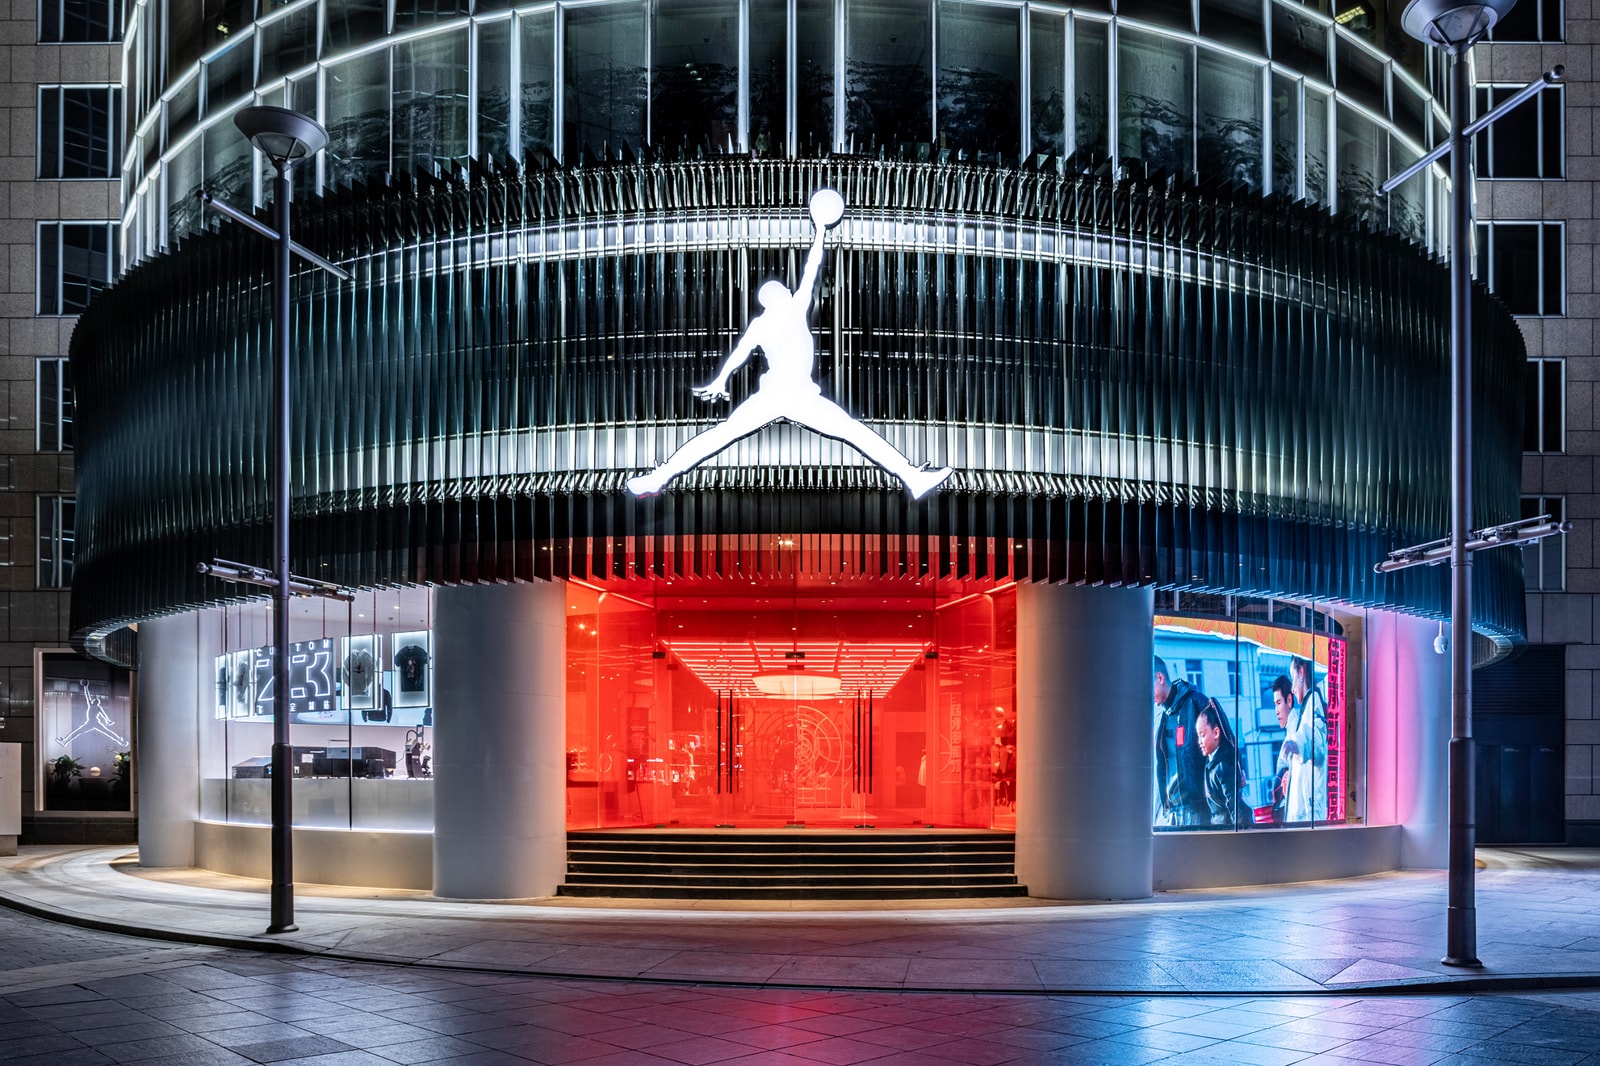  弱化 MJ 个人影响与进一步品牌化，Jordan Brand 的未来之路 